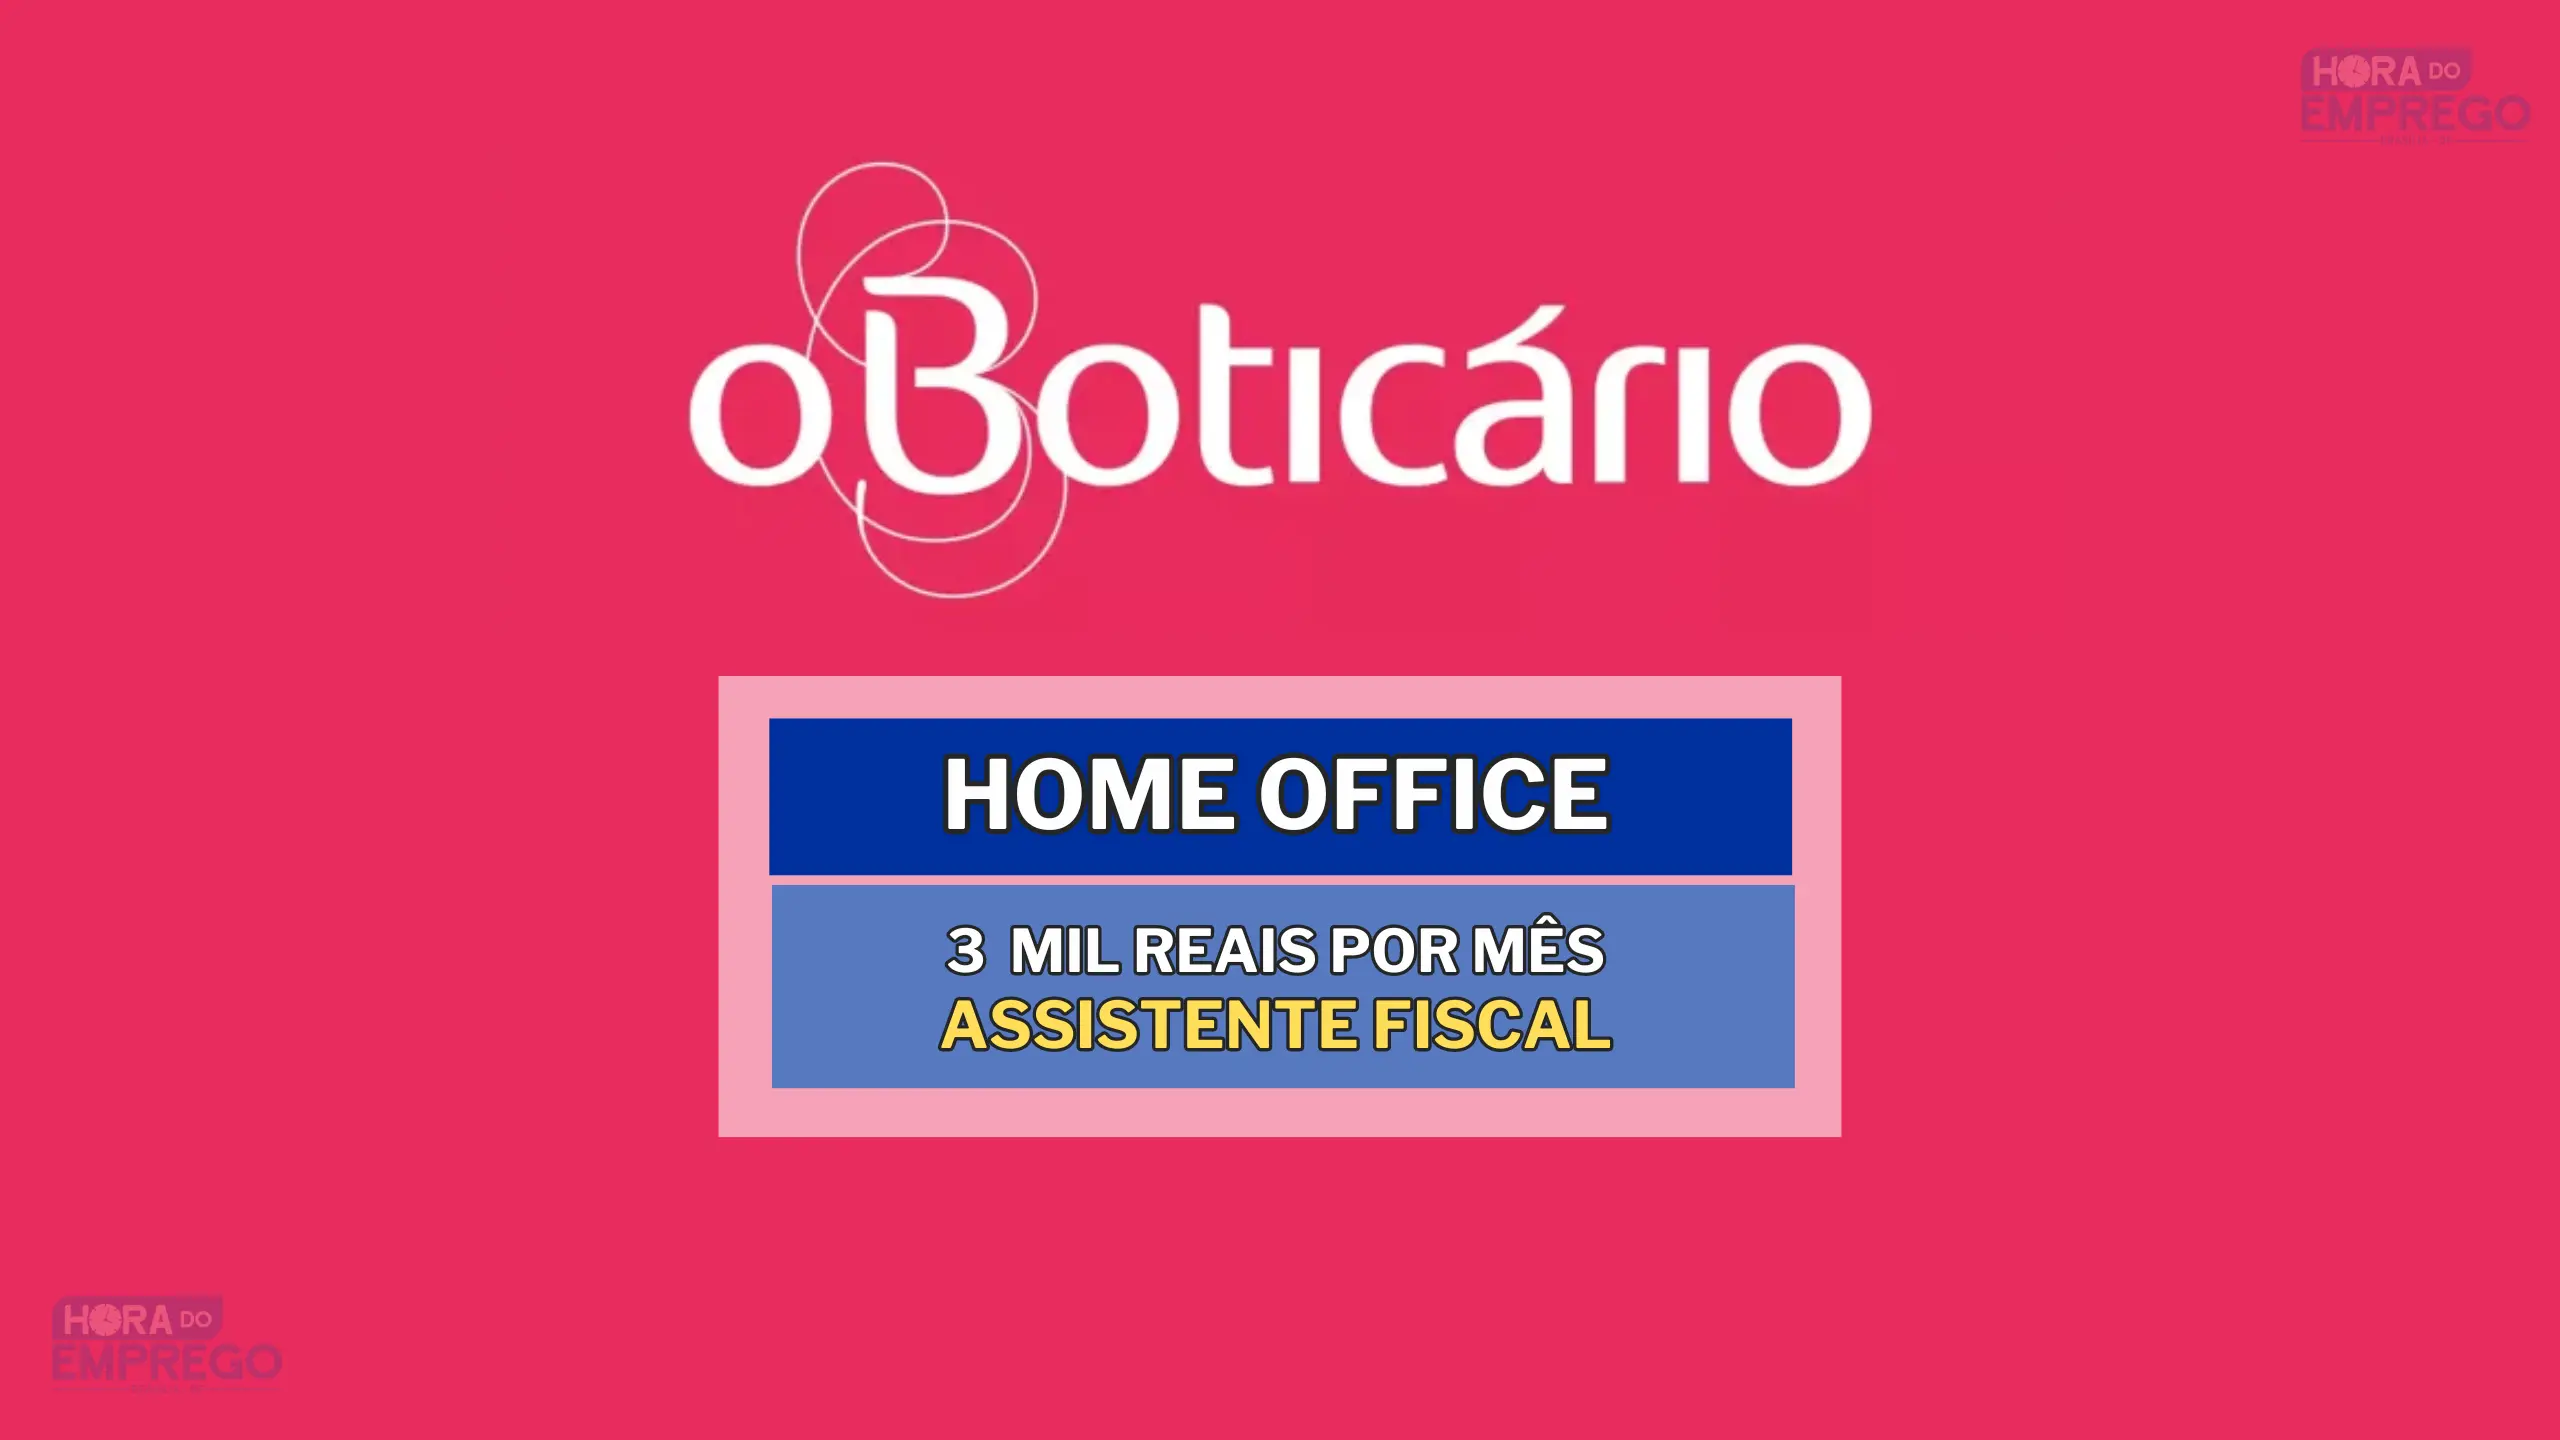 Grupo Boticário abriu vaga HOME OFFICE com salário de até R$ 3 mil por mês para Assistente Fiscal